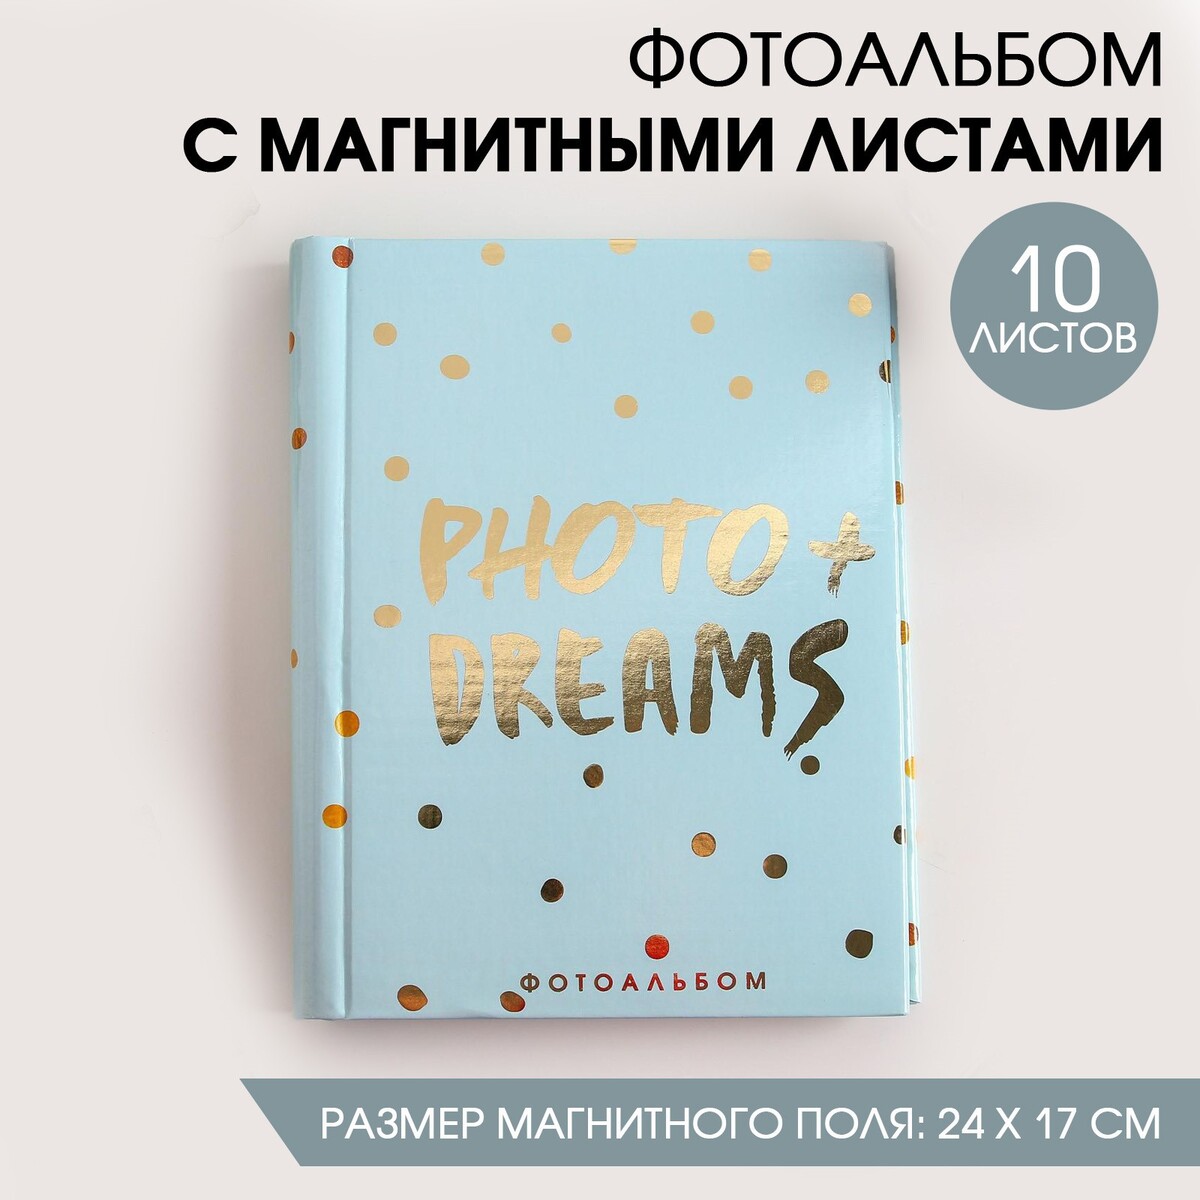 Фотоальбом photo + dreams, 10 магнитных листов magix photo